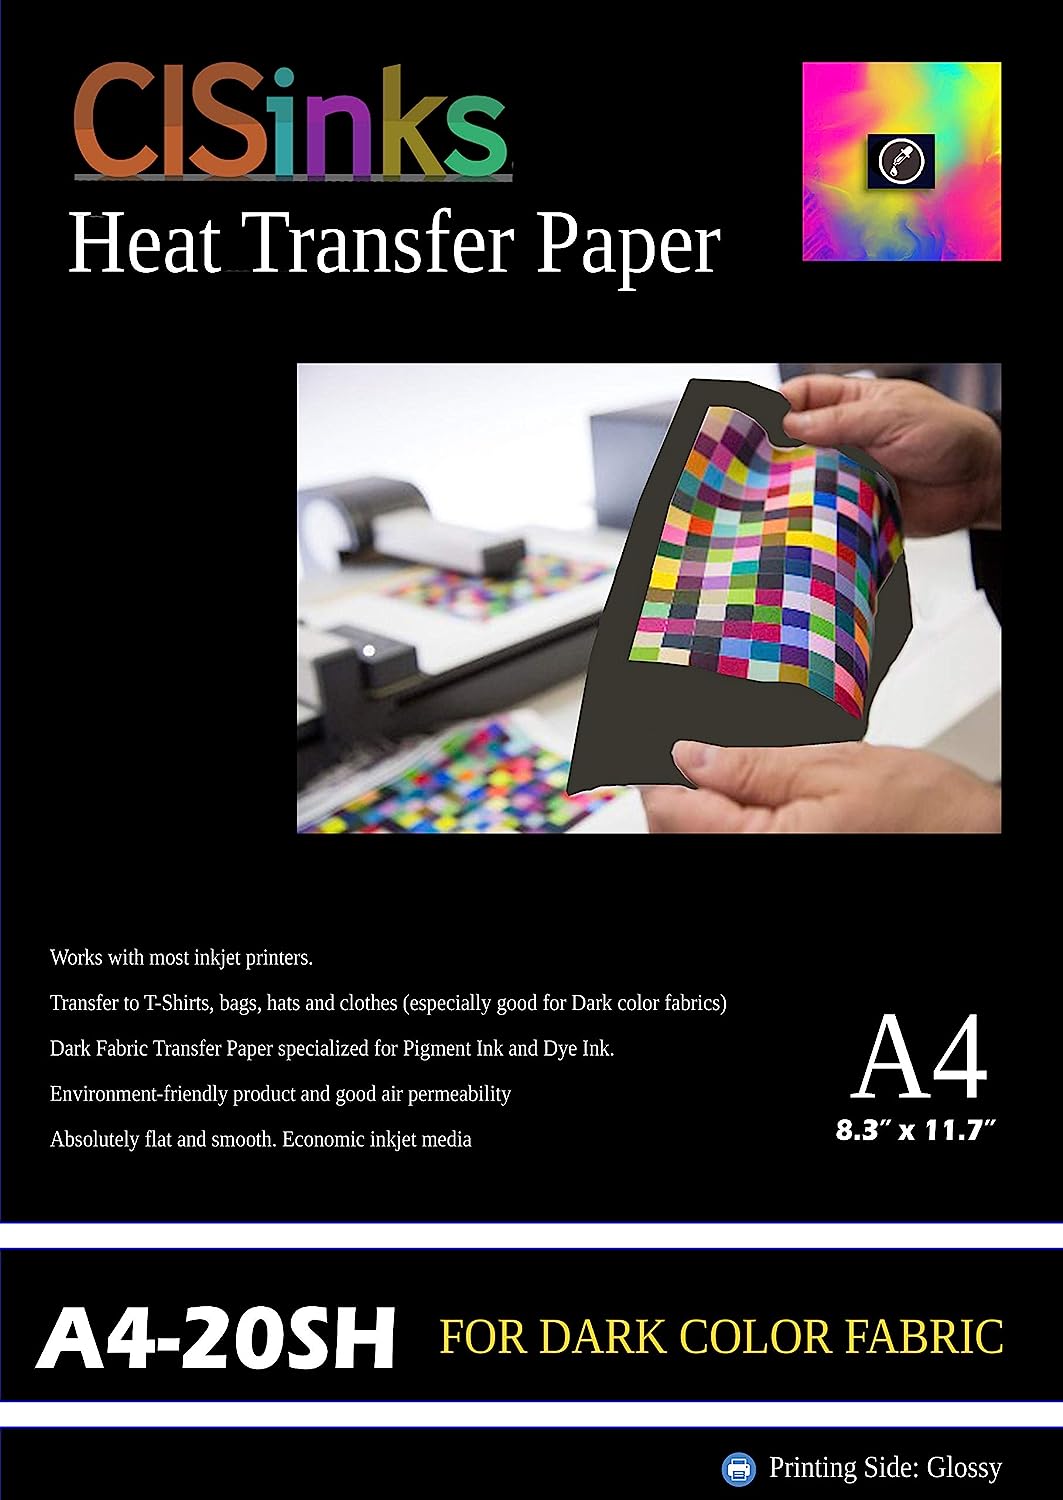 8.3 x 11.7 (A4) Dark Fabric Inkjet Heat Transfer Paper - 20